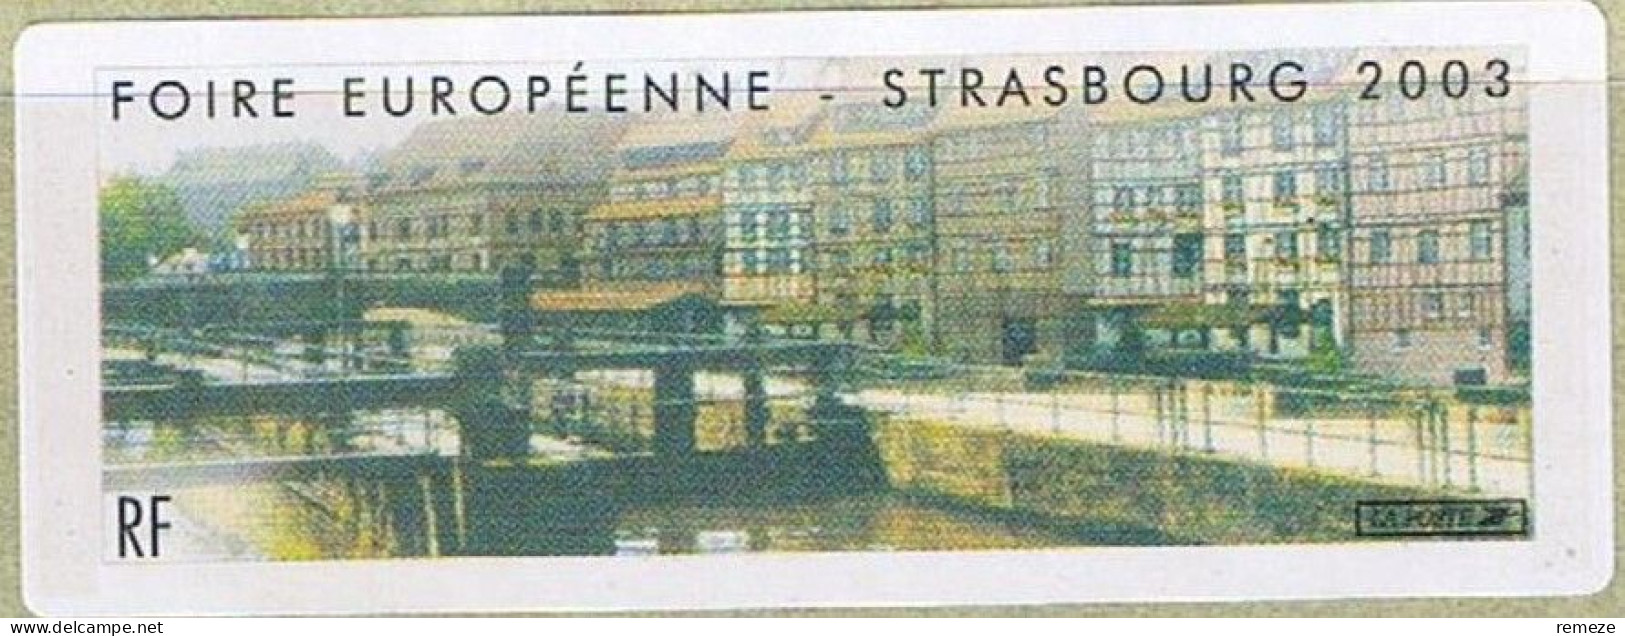 LISA - 2003 -  Strasbourg Foire Européenne ( Enveloppe Avec Cachet Du Conseil De L'europe Du 29 Sept  ) - 1999-2009 Viñetas De Franqueo Illustradas